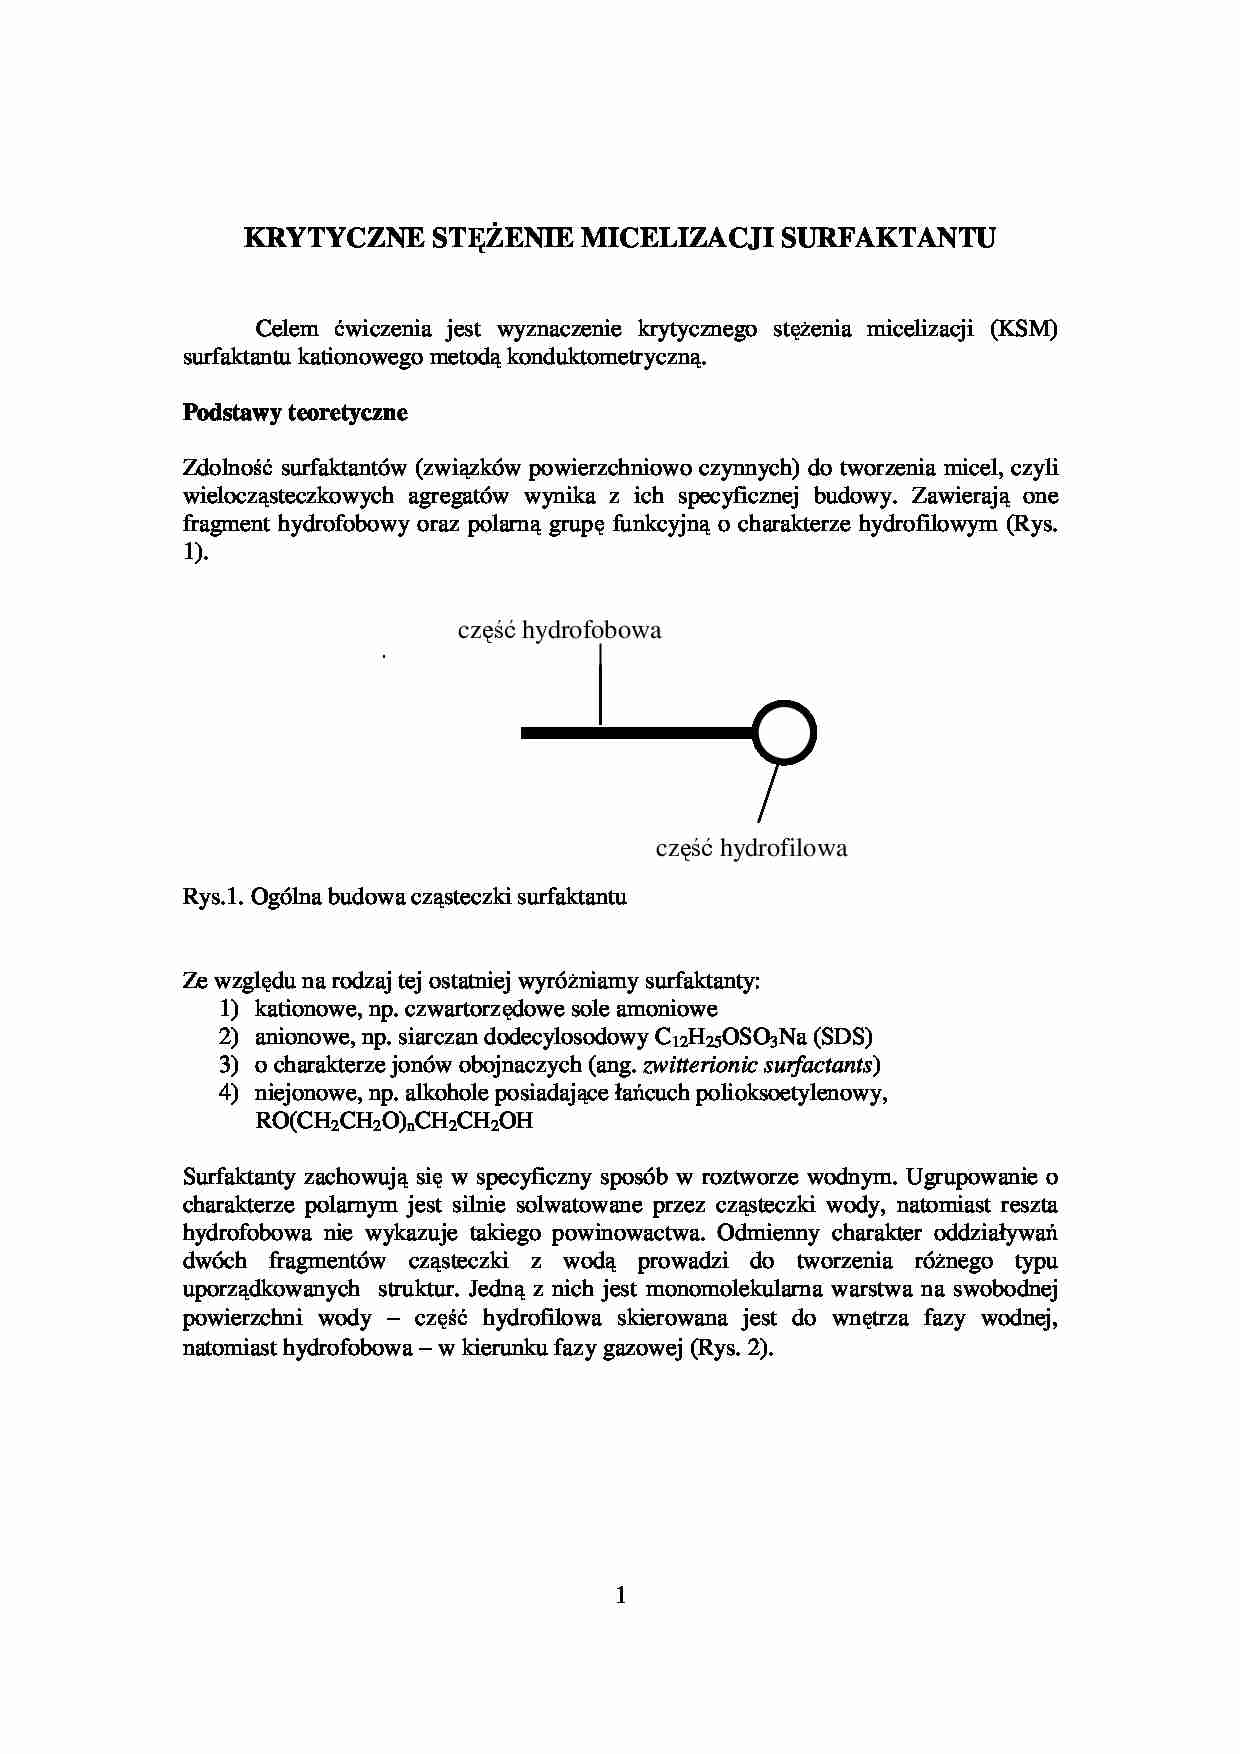 Krytyczne stężenie micelizacji surfaktantu- instrukcje laboratoryjne - strona 1